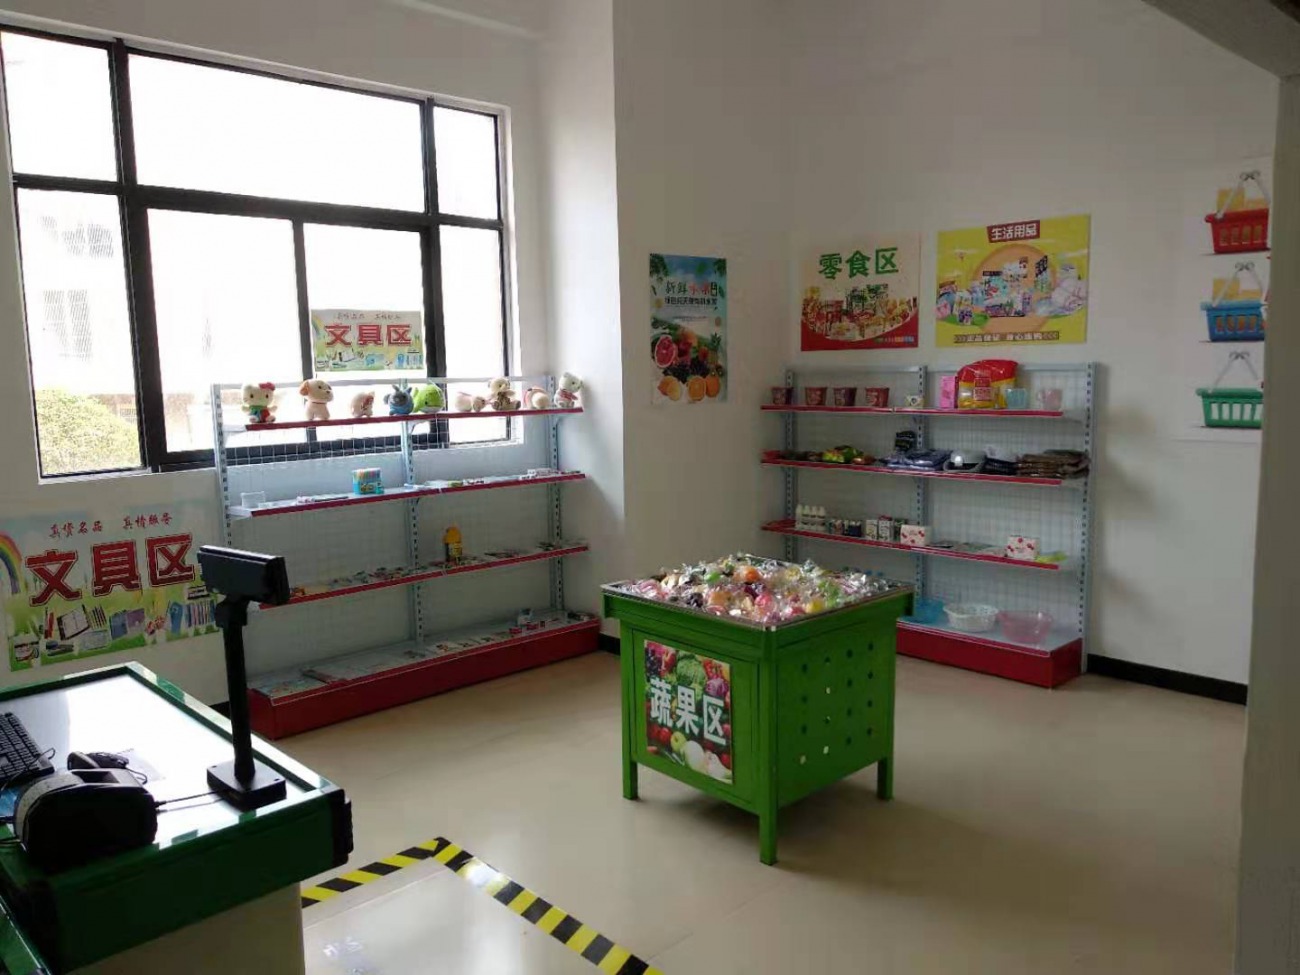 情景教室特殊教育学校情景模拟教室模拟超市模拟银行模拟交通